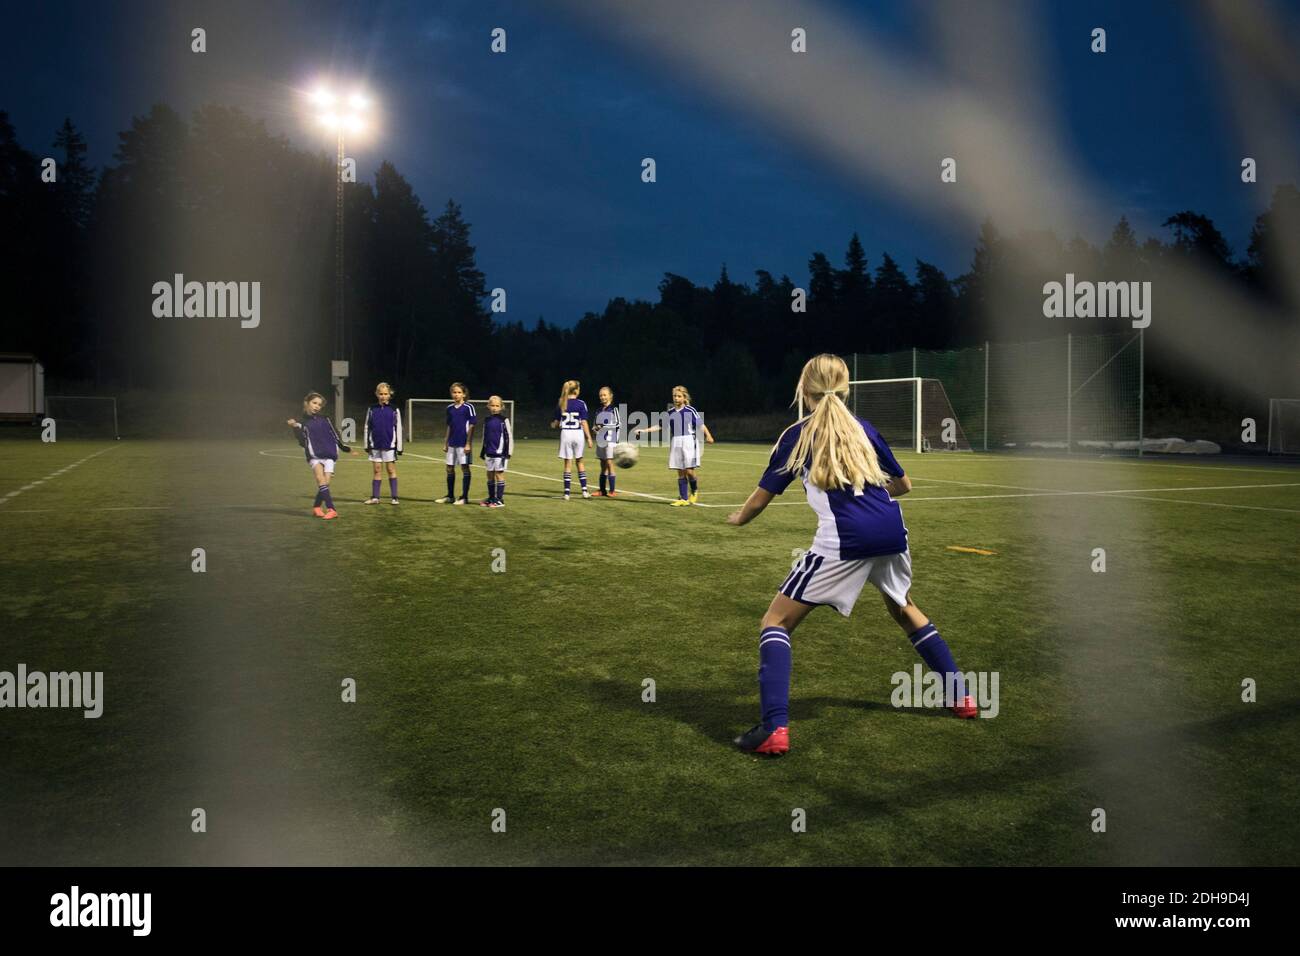 Mädchen, die Fußball spielen, gesehen vom Tor nach dem Netz auf dem Feld Gegen den Himmel Stockfoto